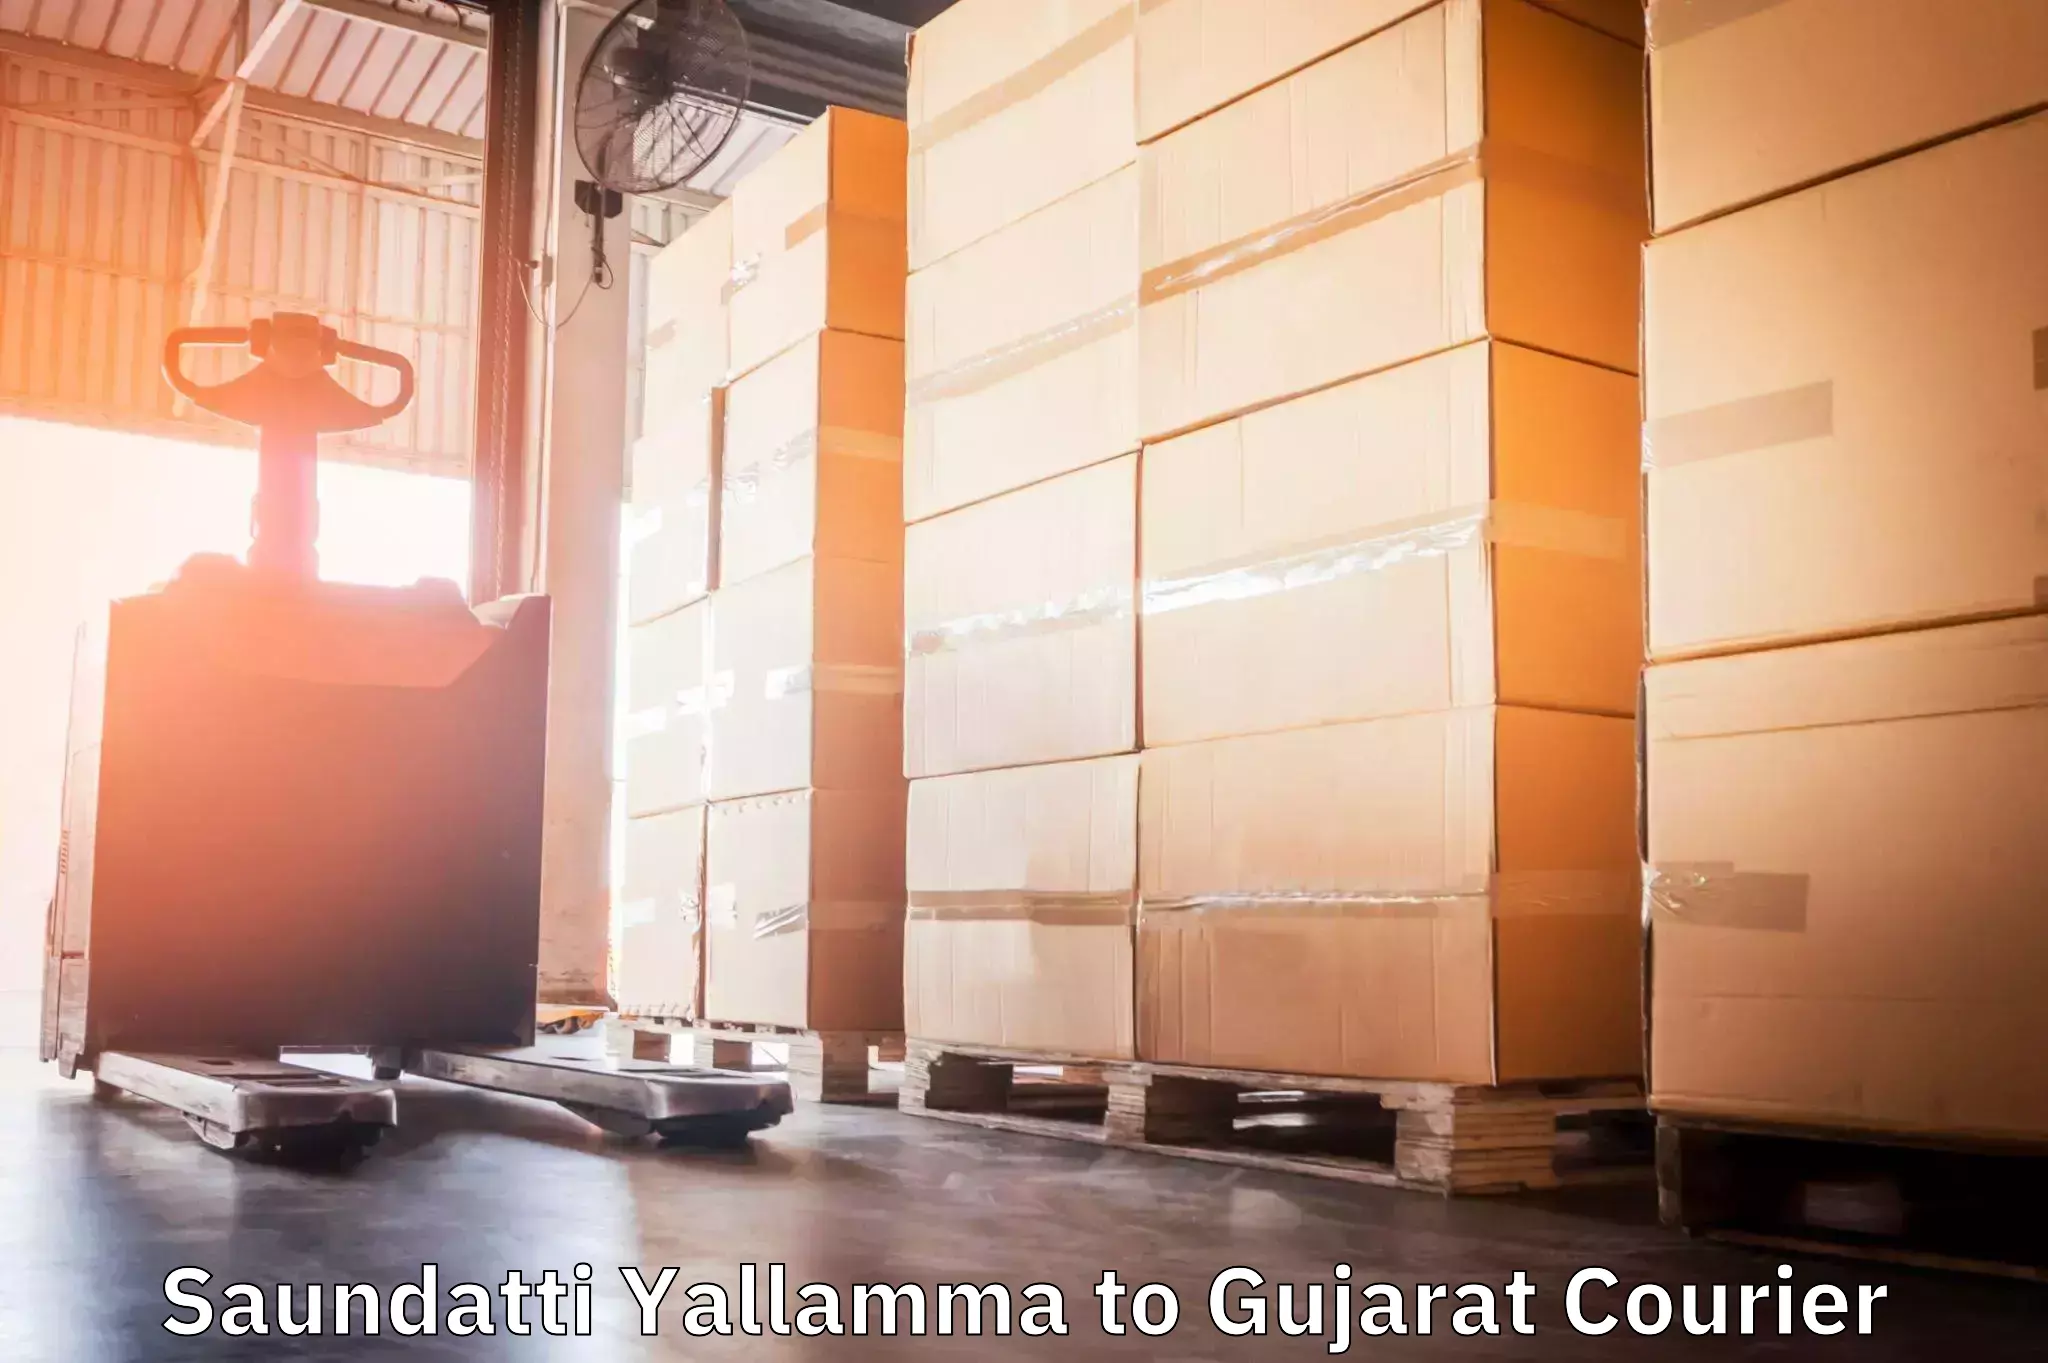 Cross-border shipping Saundatti Yallamma to Gujarat